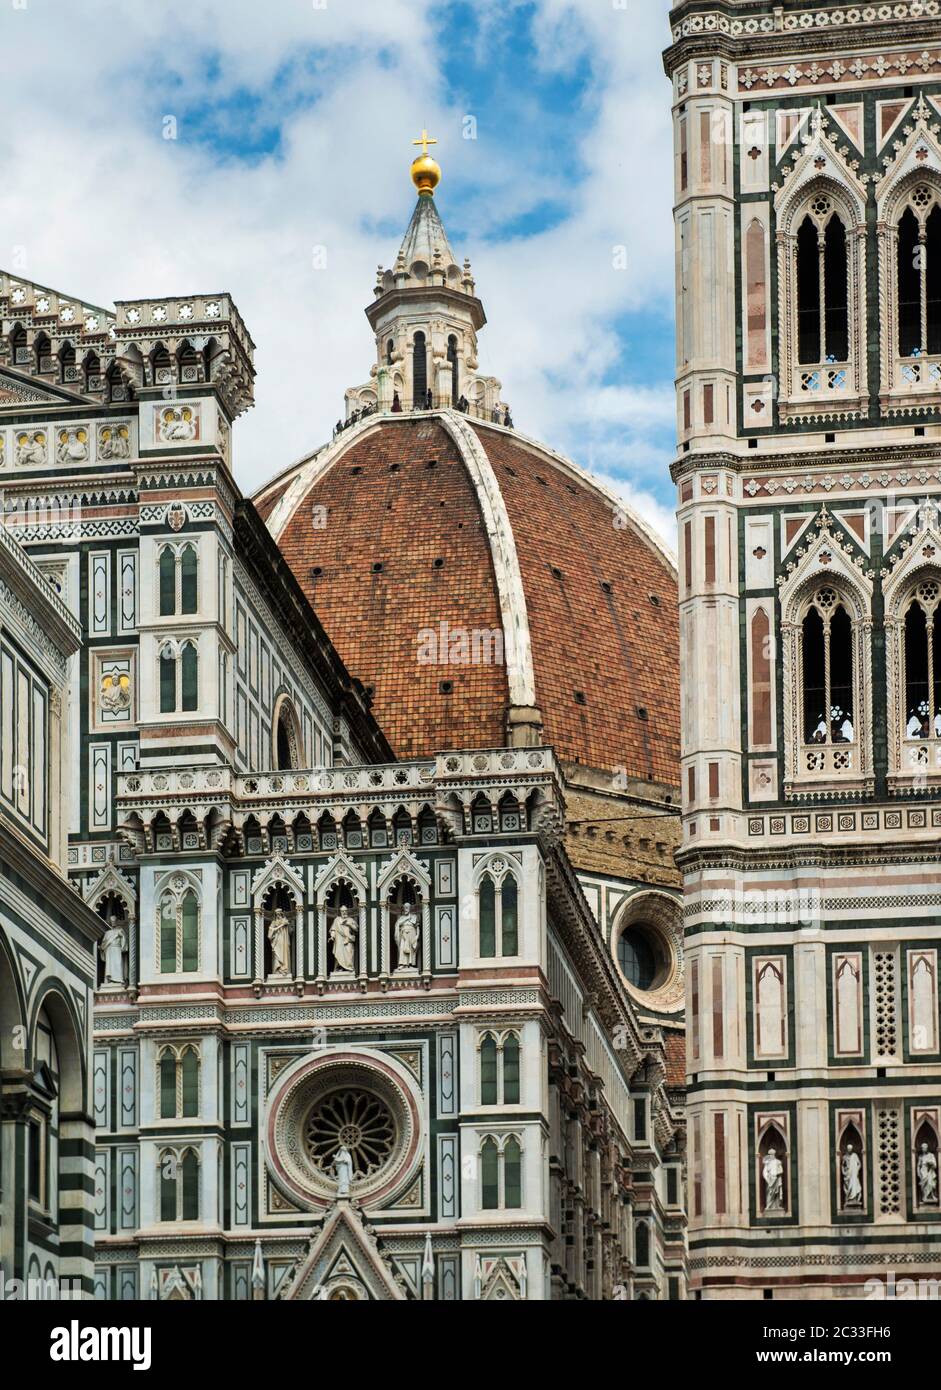 Cattedrale di Firenze, Cattedrale di Santa Maria del Fiore, Toscana, Italia; uno dei luoghi più rappresentativi è il Duomo con cupola in terracotta. Foto Stock